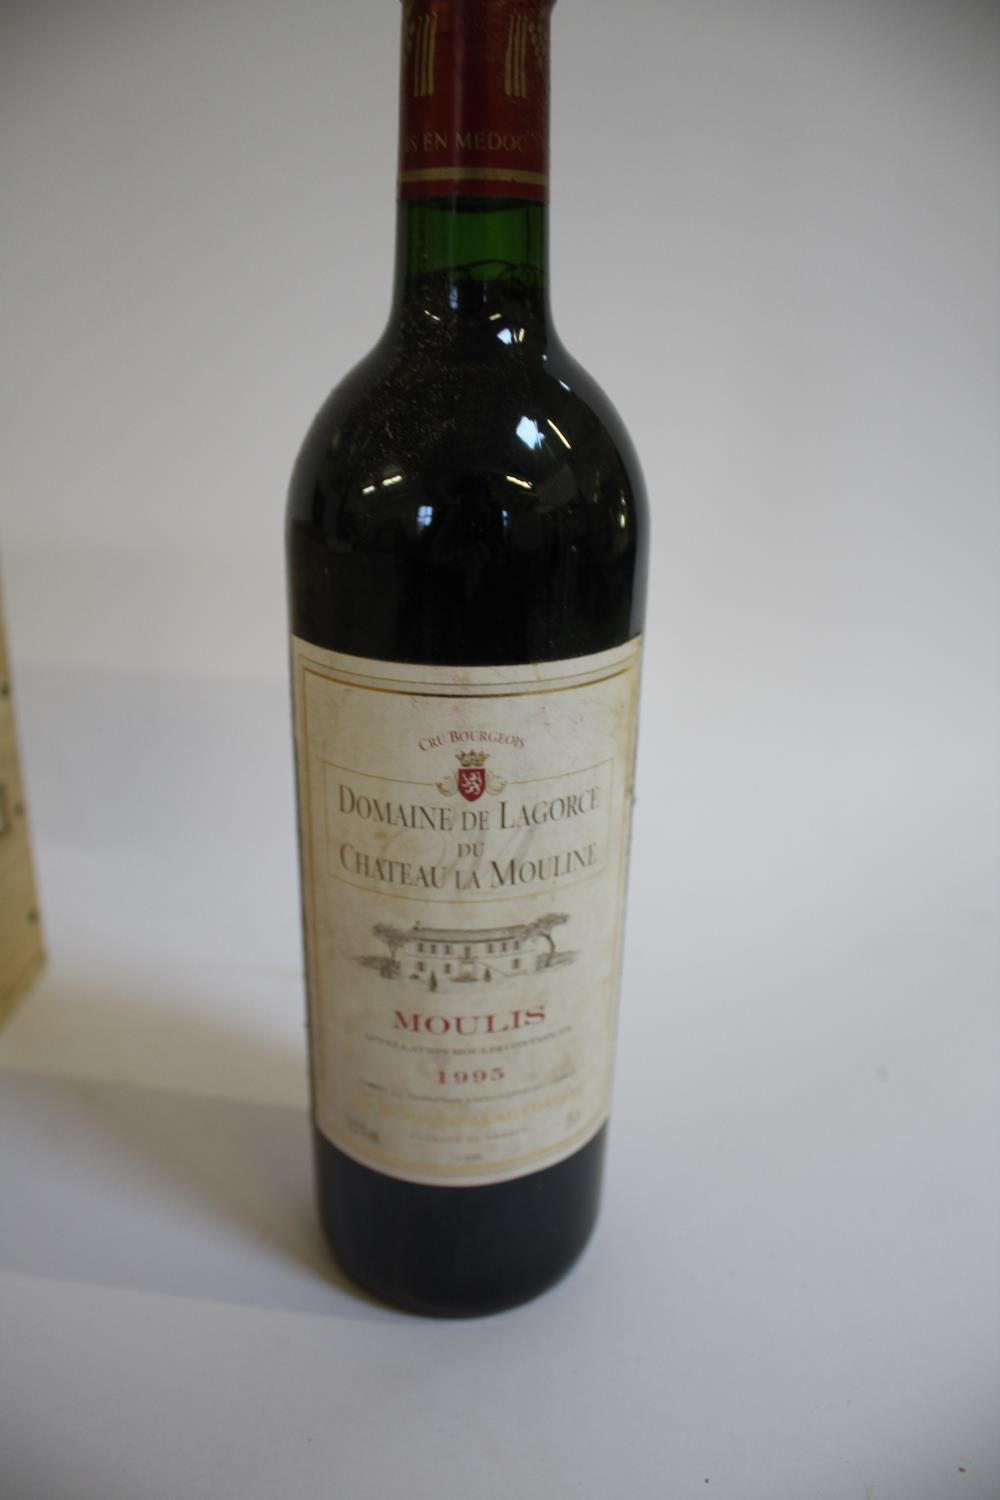 WINE - DOMAINE DE LAGORCE 6 bottles of Domaine De Lagorce, Chateau La Mouline, 1995, in part of - Image 2 of 2